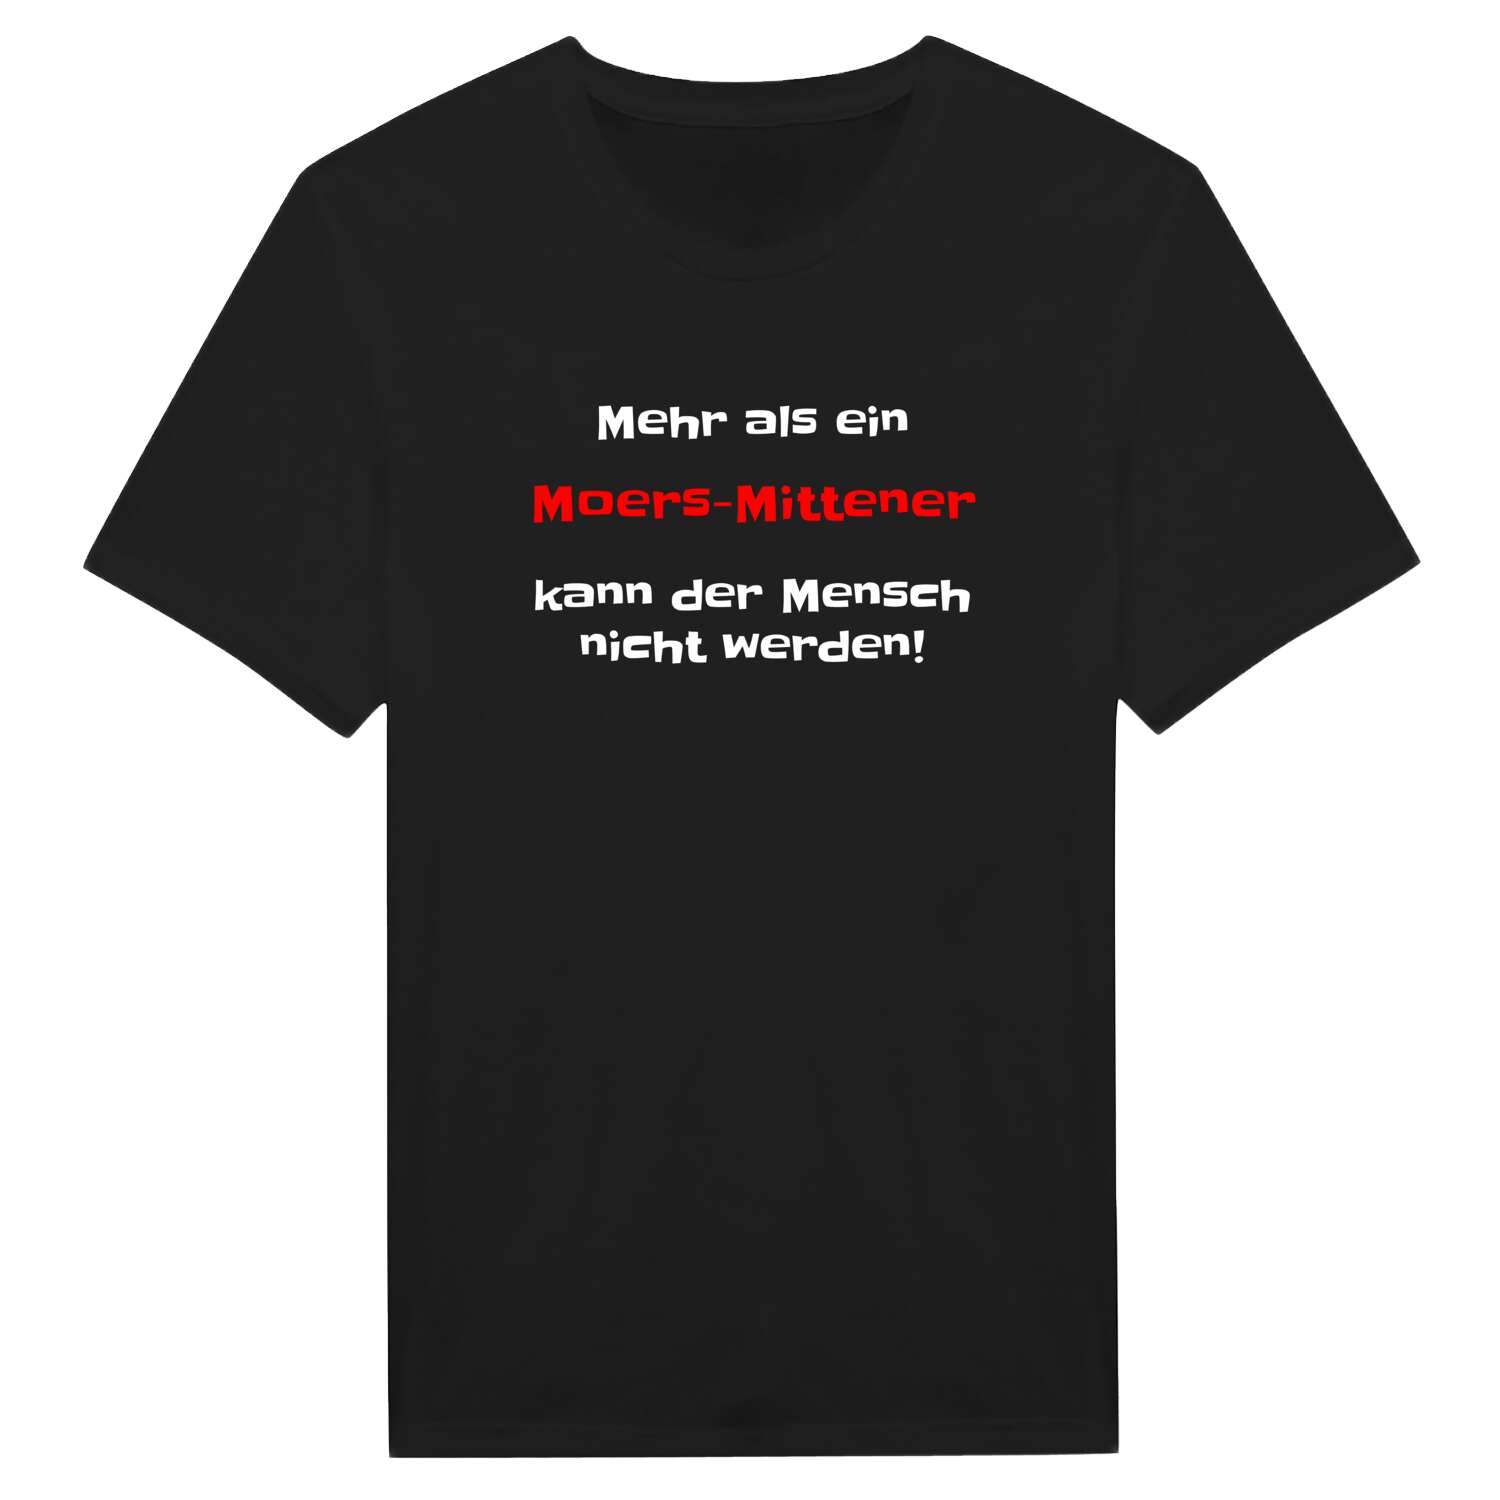 Moers-Mitte T-Shirt »Mehr als ein«